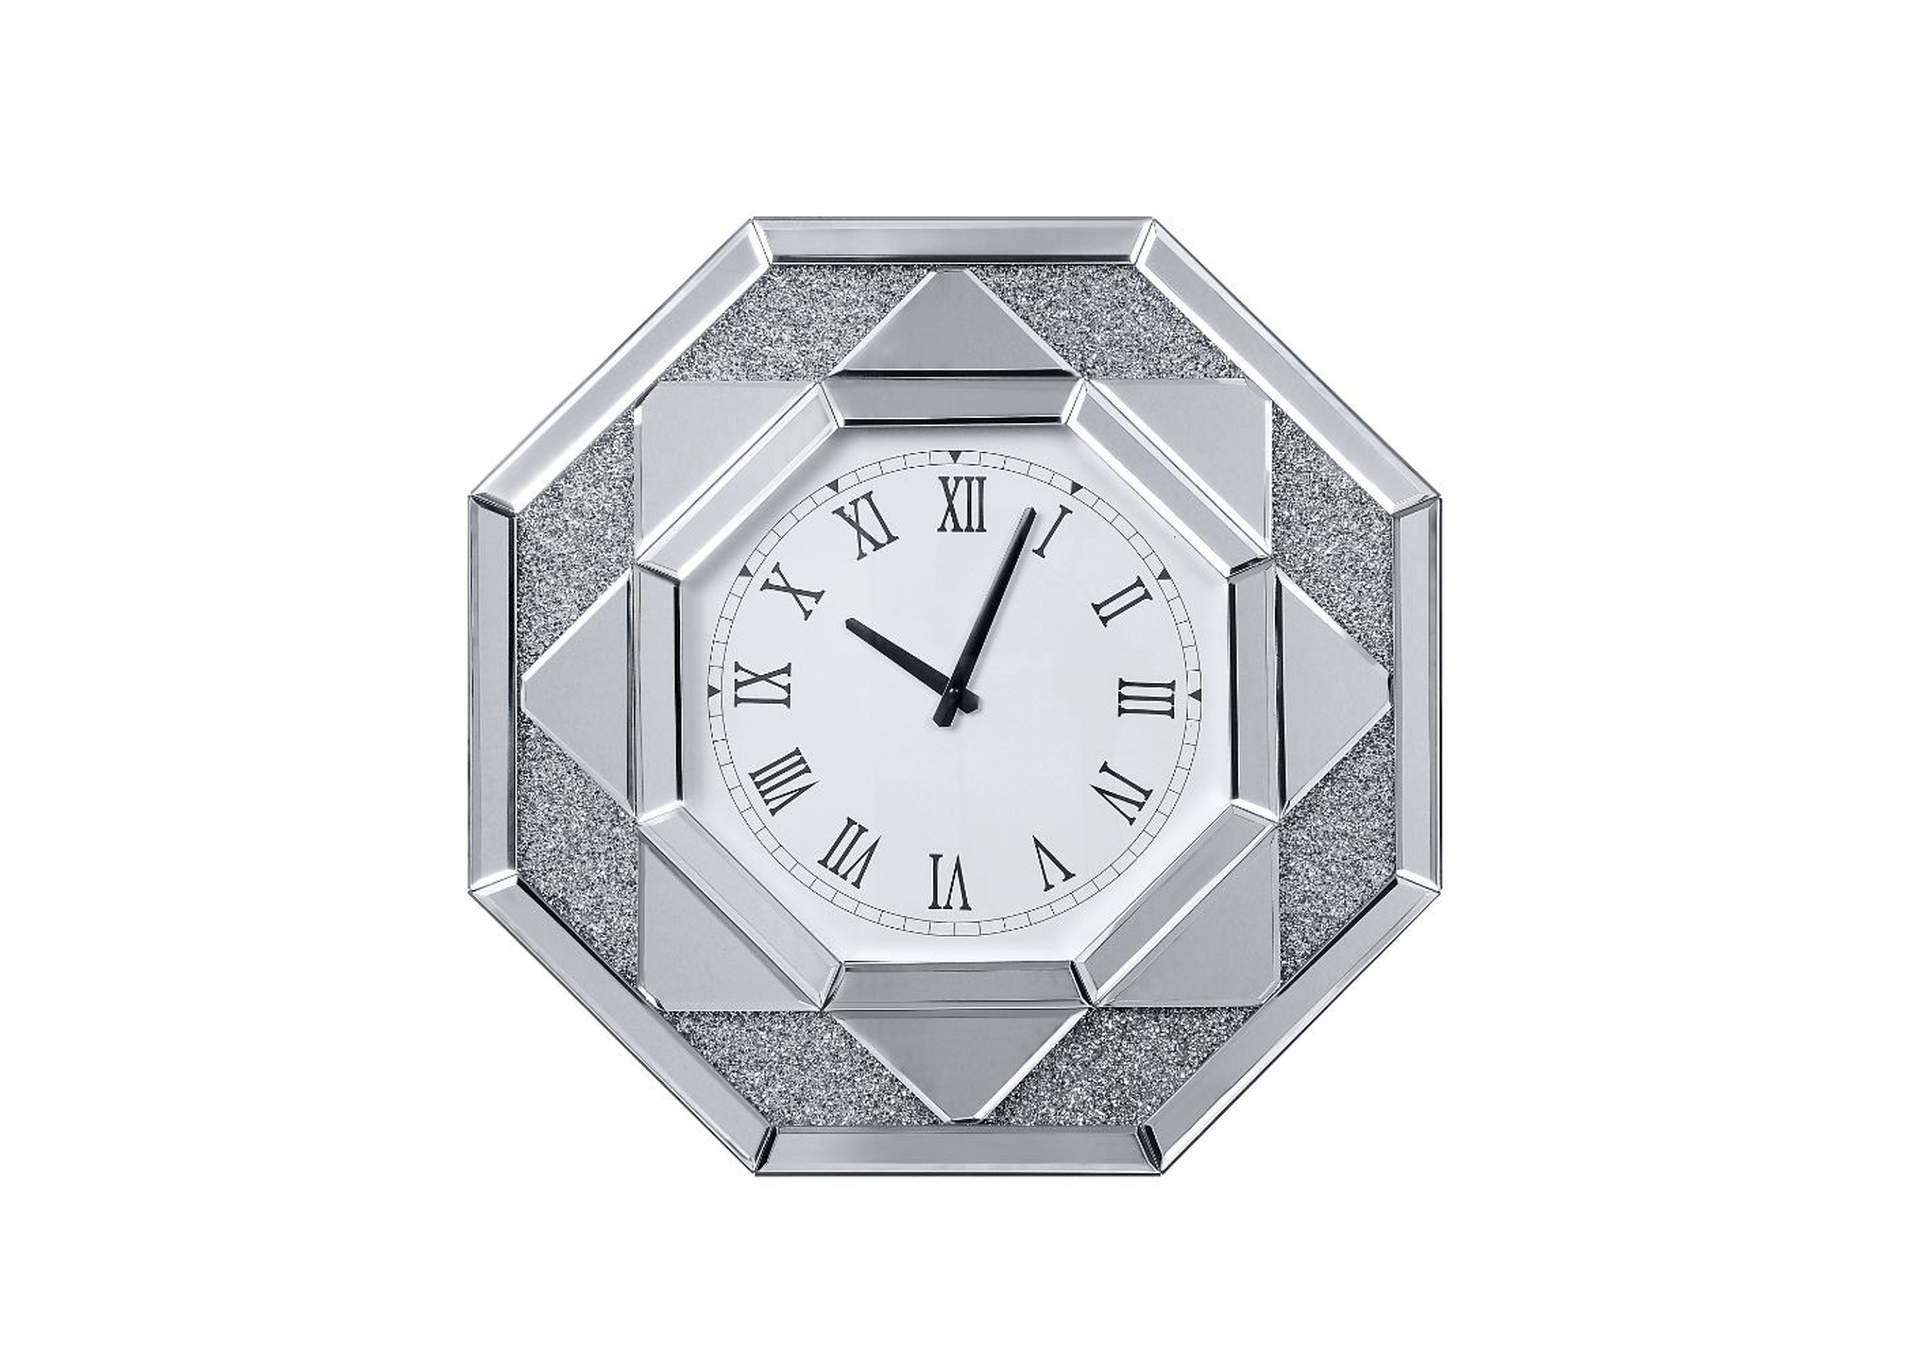 Maita Mirrored & Faux Gems Wall Clock,Acme